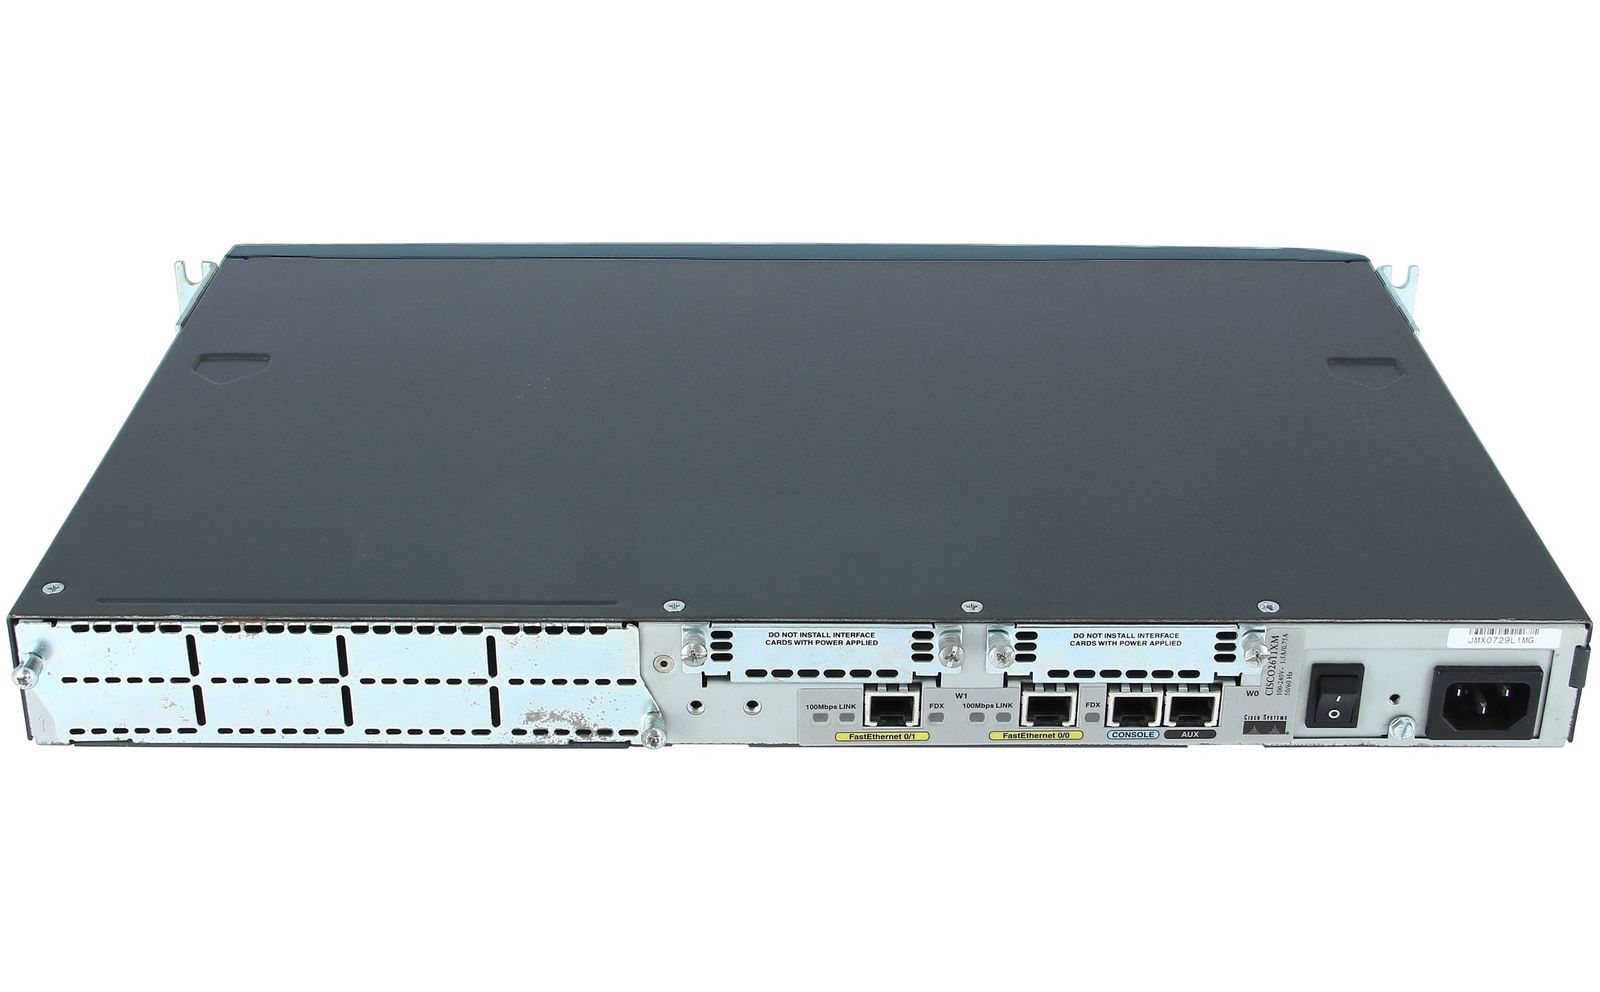 CISCO - CISCO2611XM - Dual 10/100 Ethernet Router w/ Cisco IOS IP, 32F/ 128D